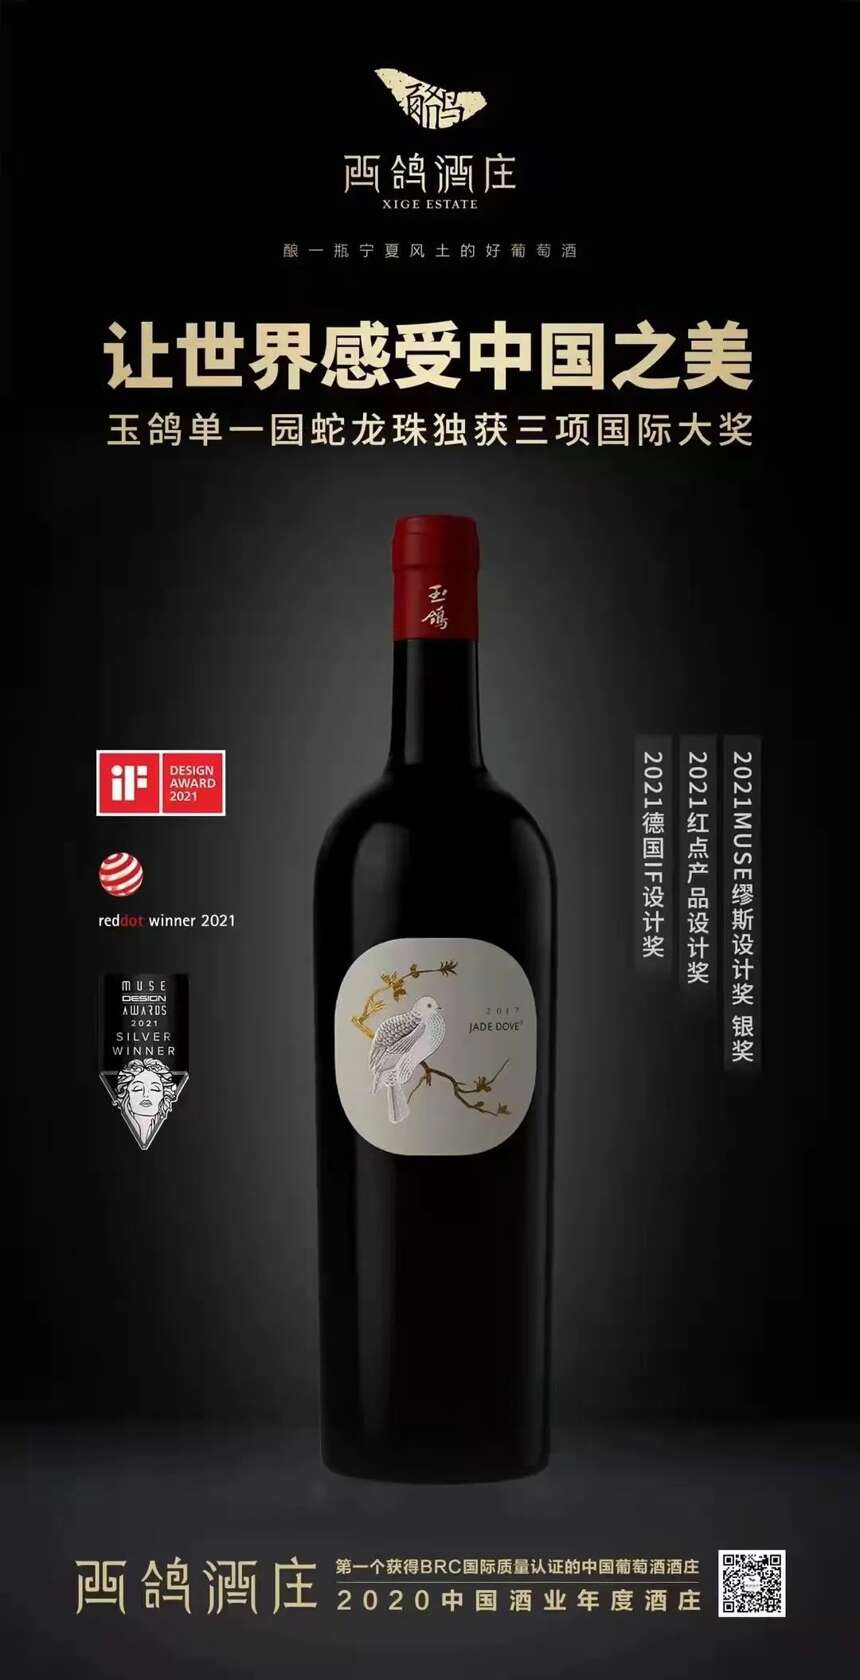 玉鸽单一园两年4获国际设计大奖，西鸽酒庄向世界展示东方美学